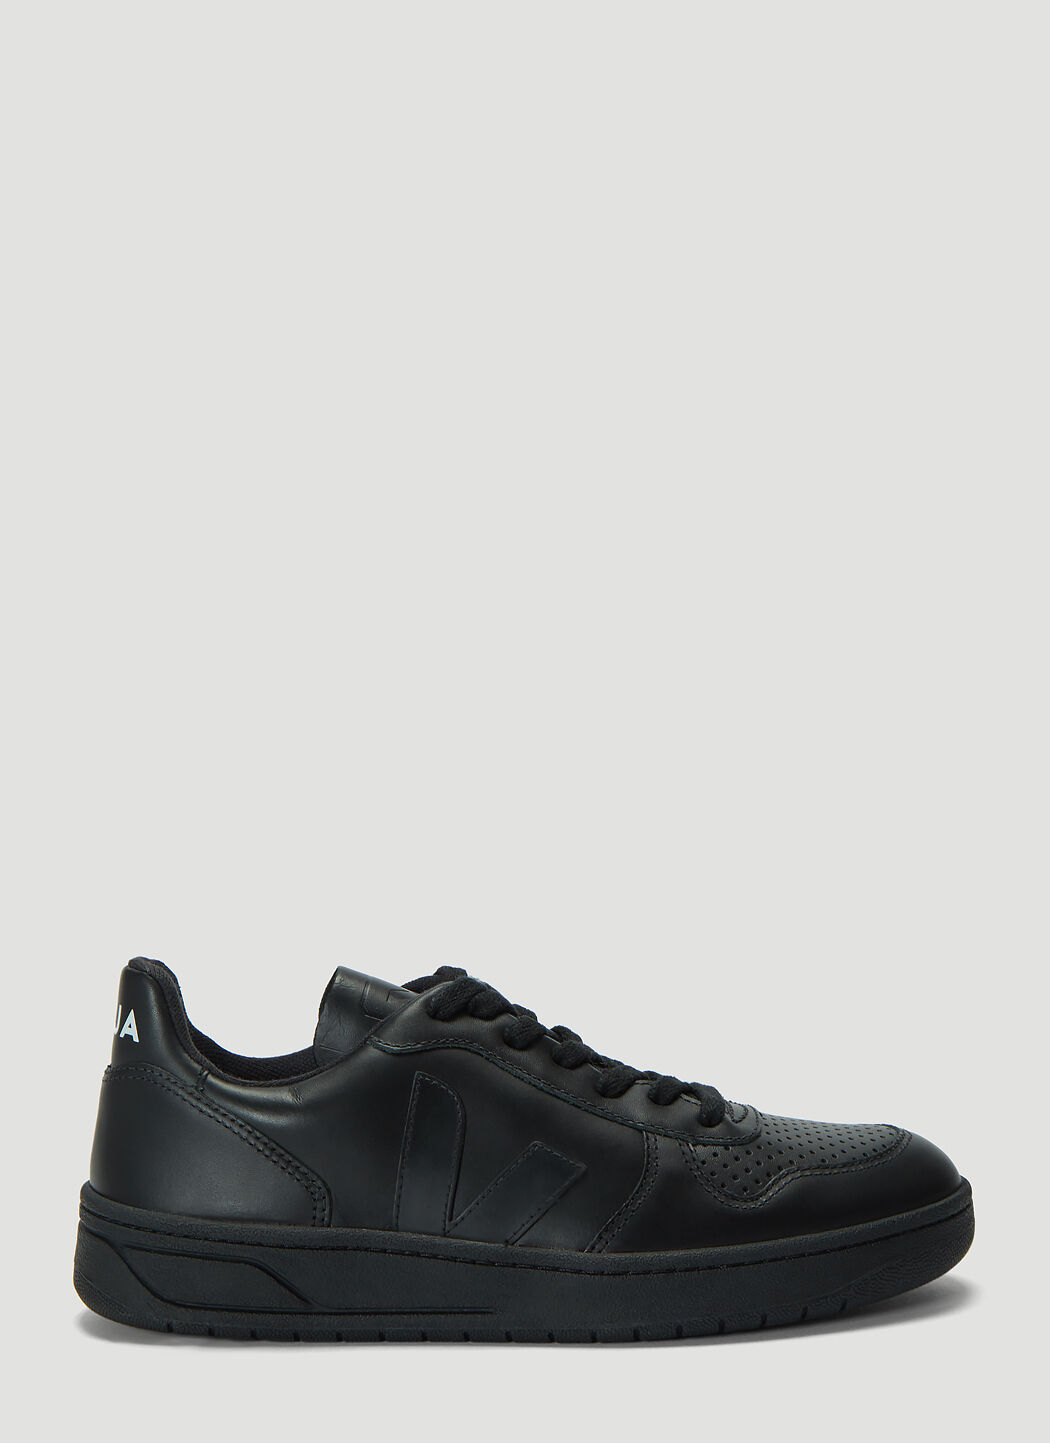 Rombaut V-10 Leather Sneakers Black rmb0244004